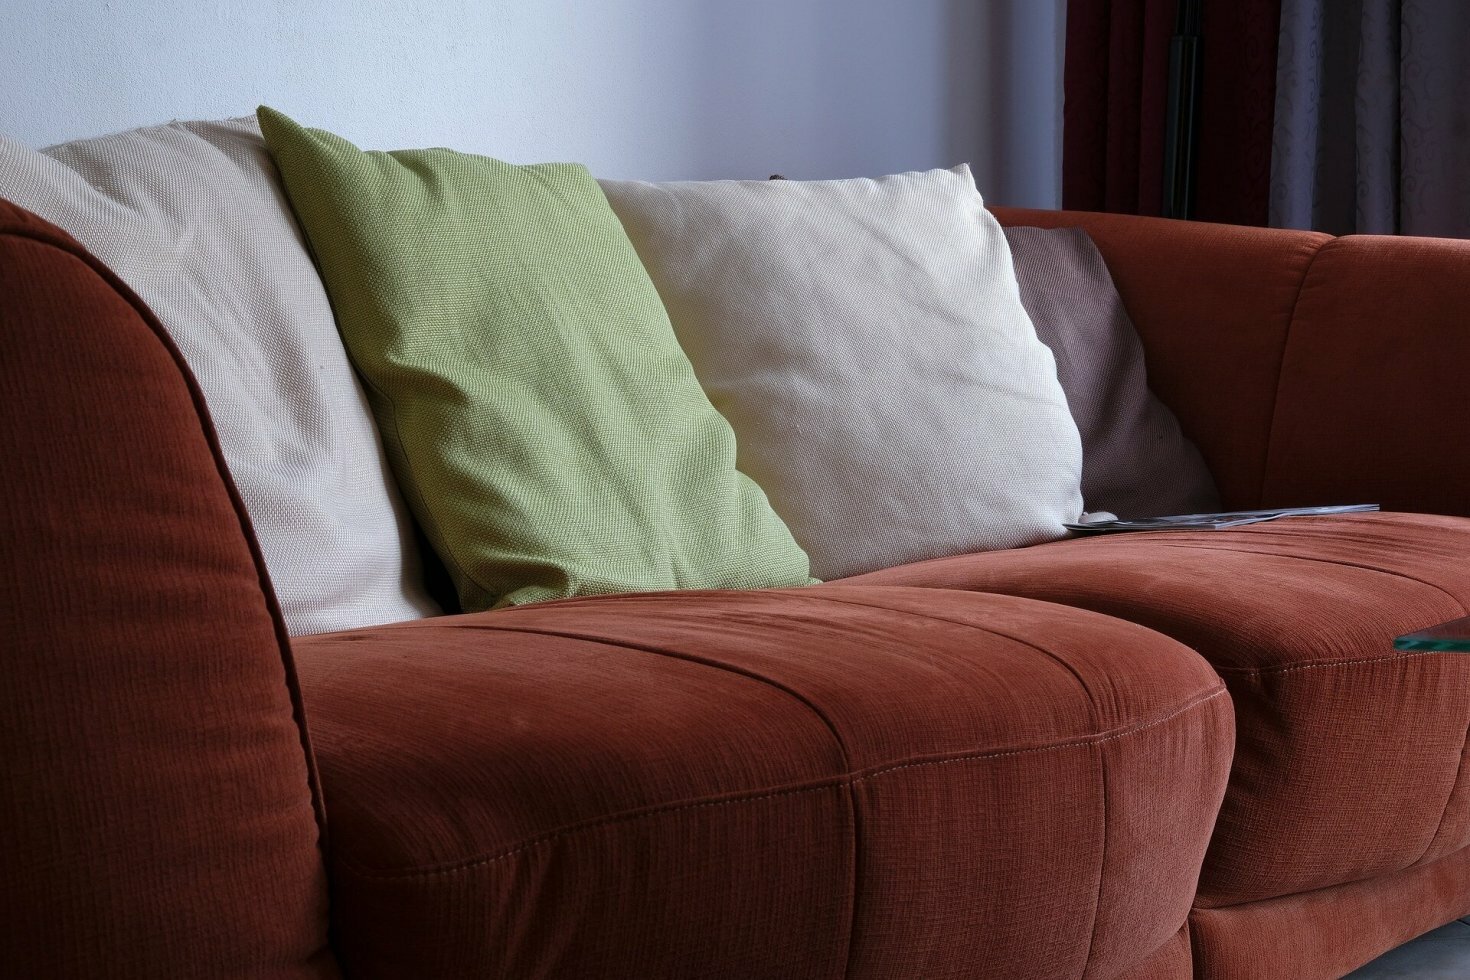 På udkig efter din nye sofa? - find inspiration her  